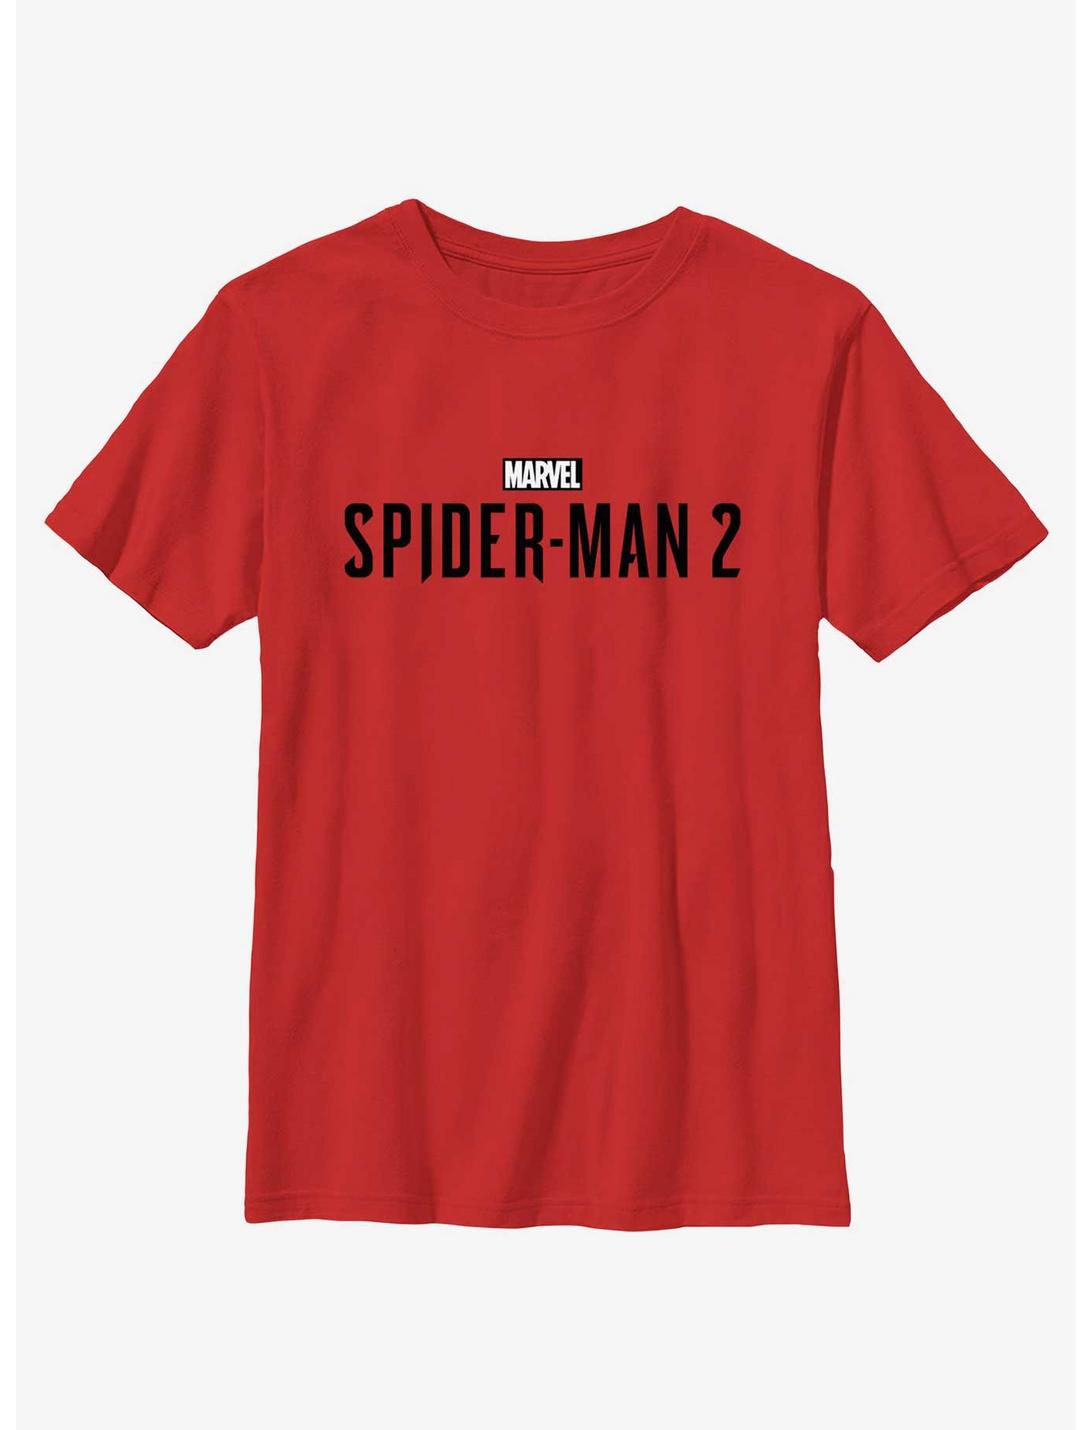 Marvel Spider-Man 2 Game Black Logo Youth T-Shirt, RED, hi-res